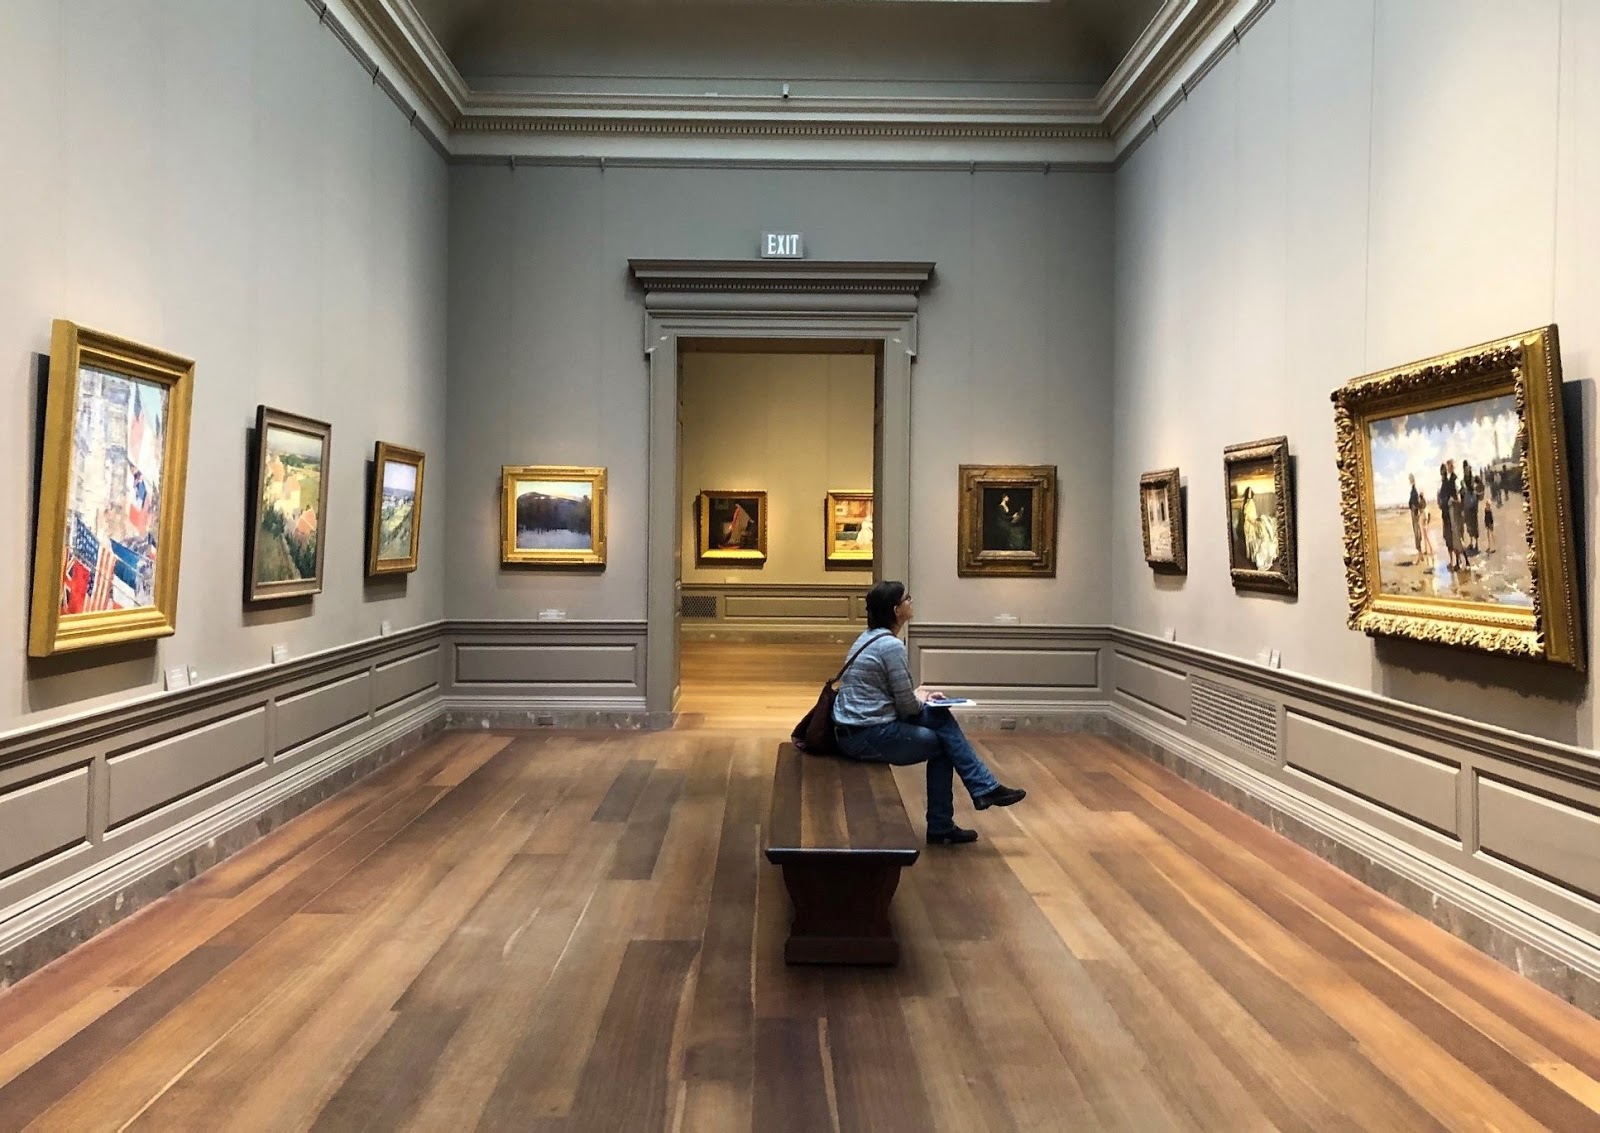 图片展示了一位坐在长椅上的人，身处于装饰典雅的画廊内，墙上挂着多幅精美的画作。